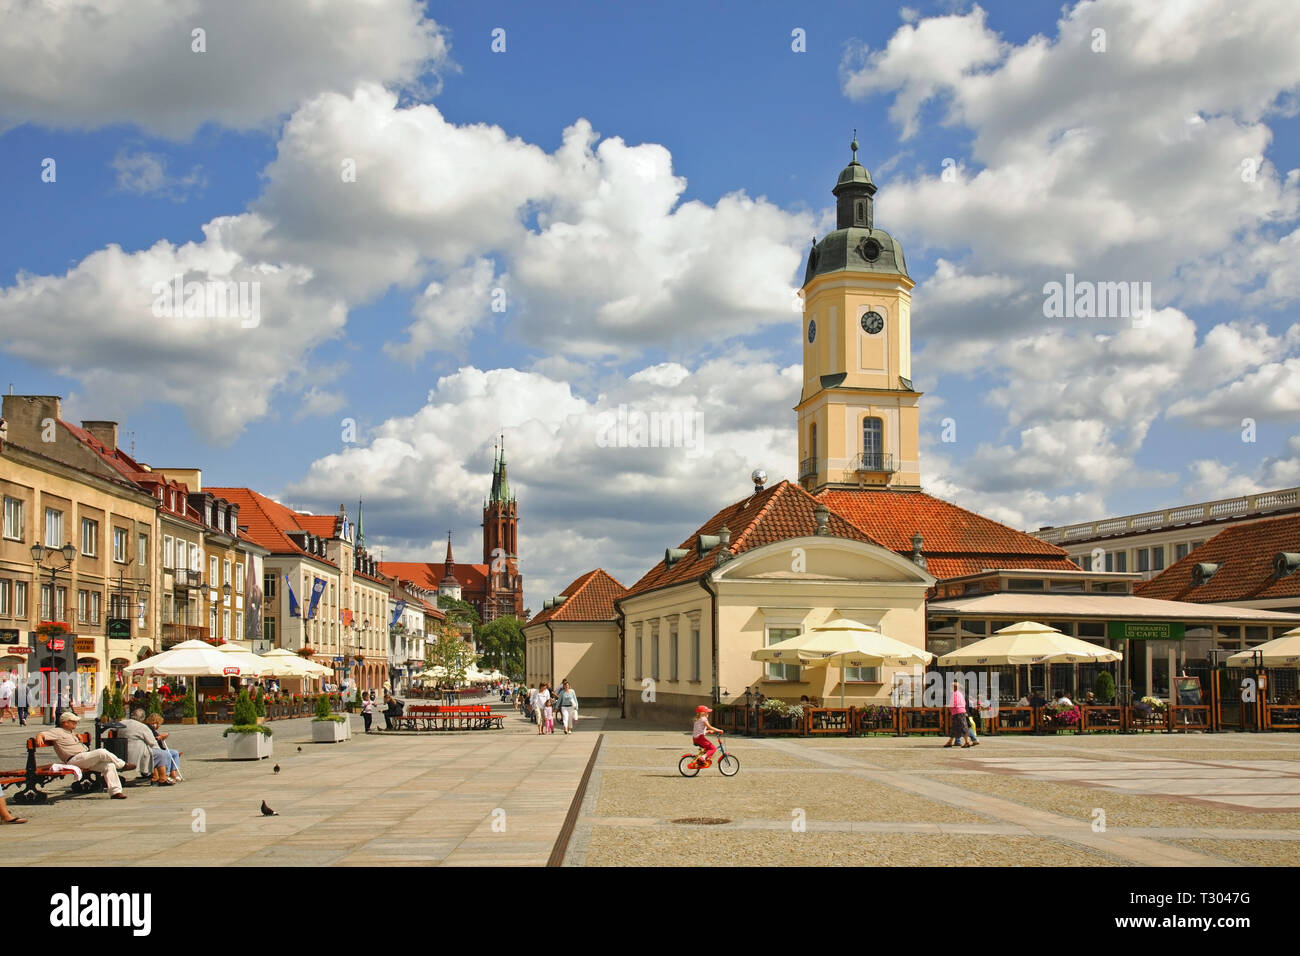 Townhouse at Kosciuszko Market Square in Bialystok. Poland Stock Photo -  Alamy